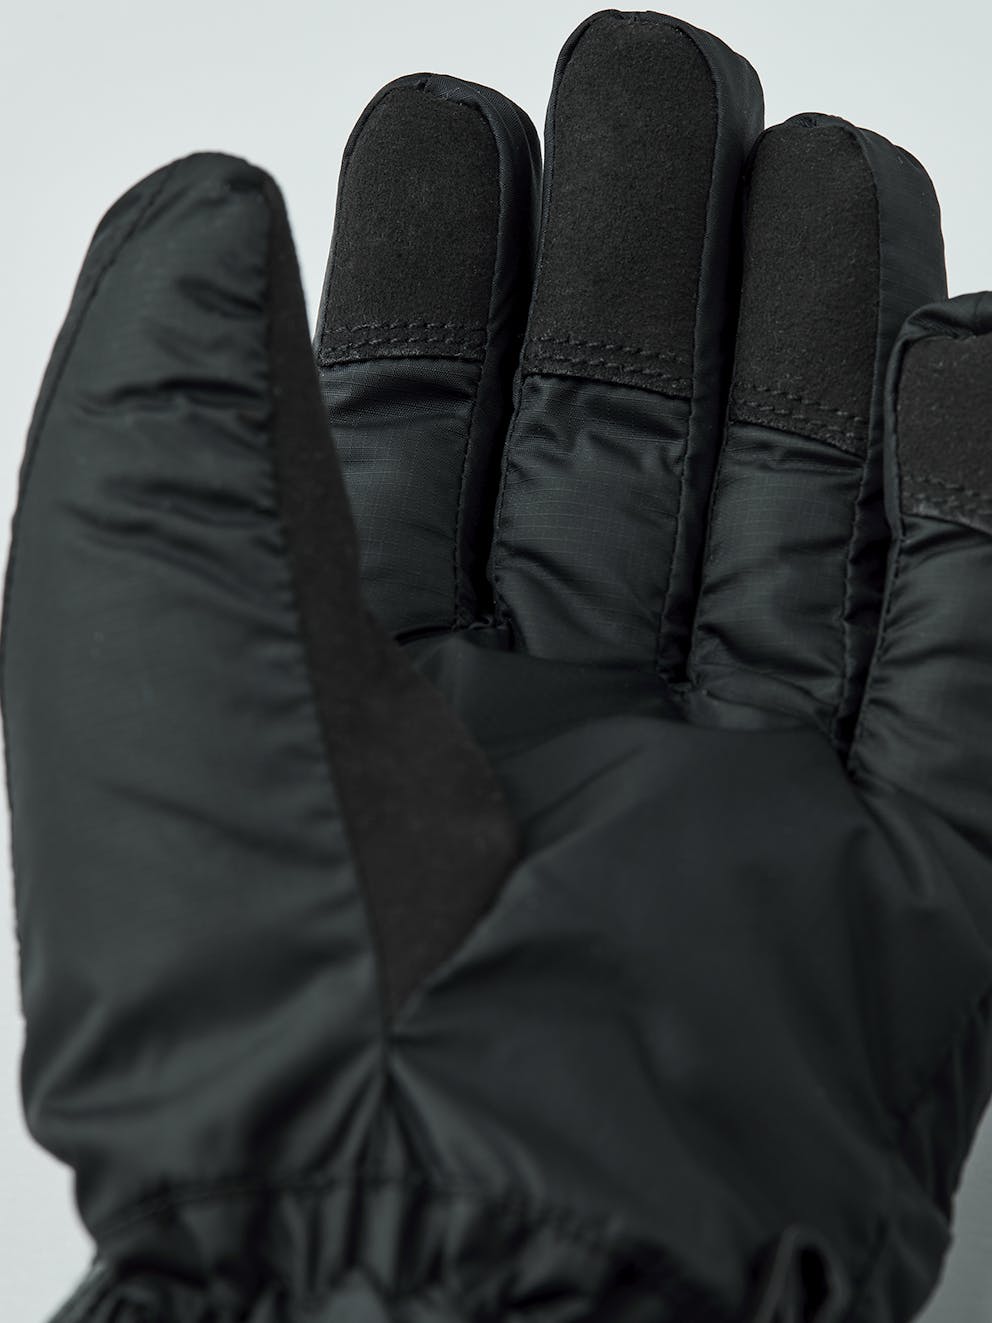 Heated Liner 5-finger - Black